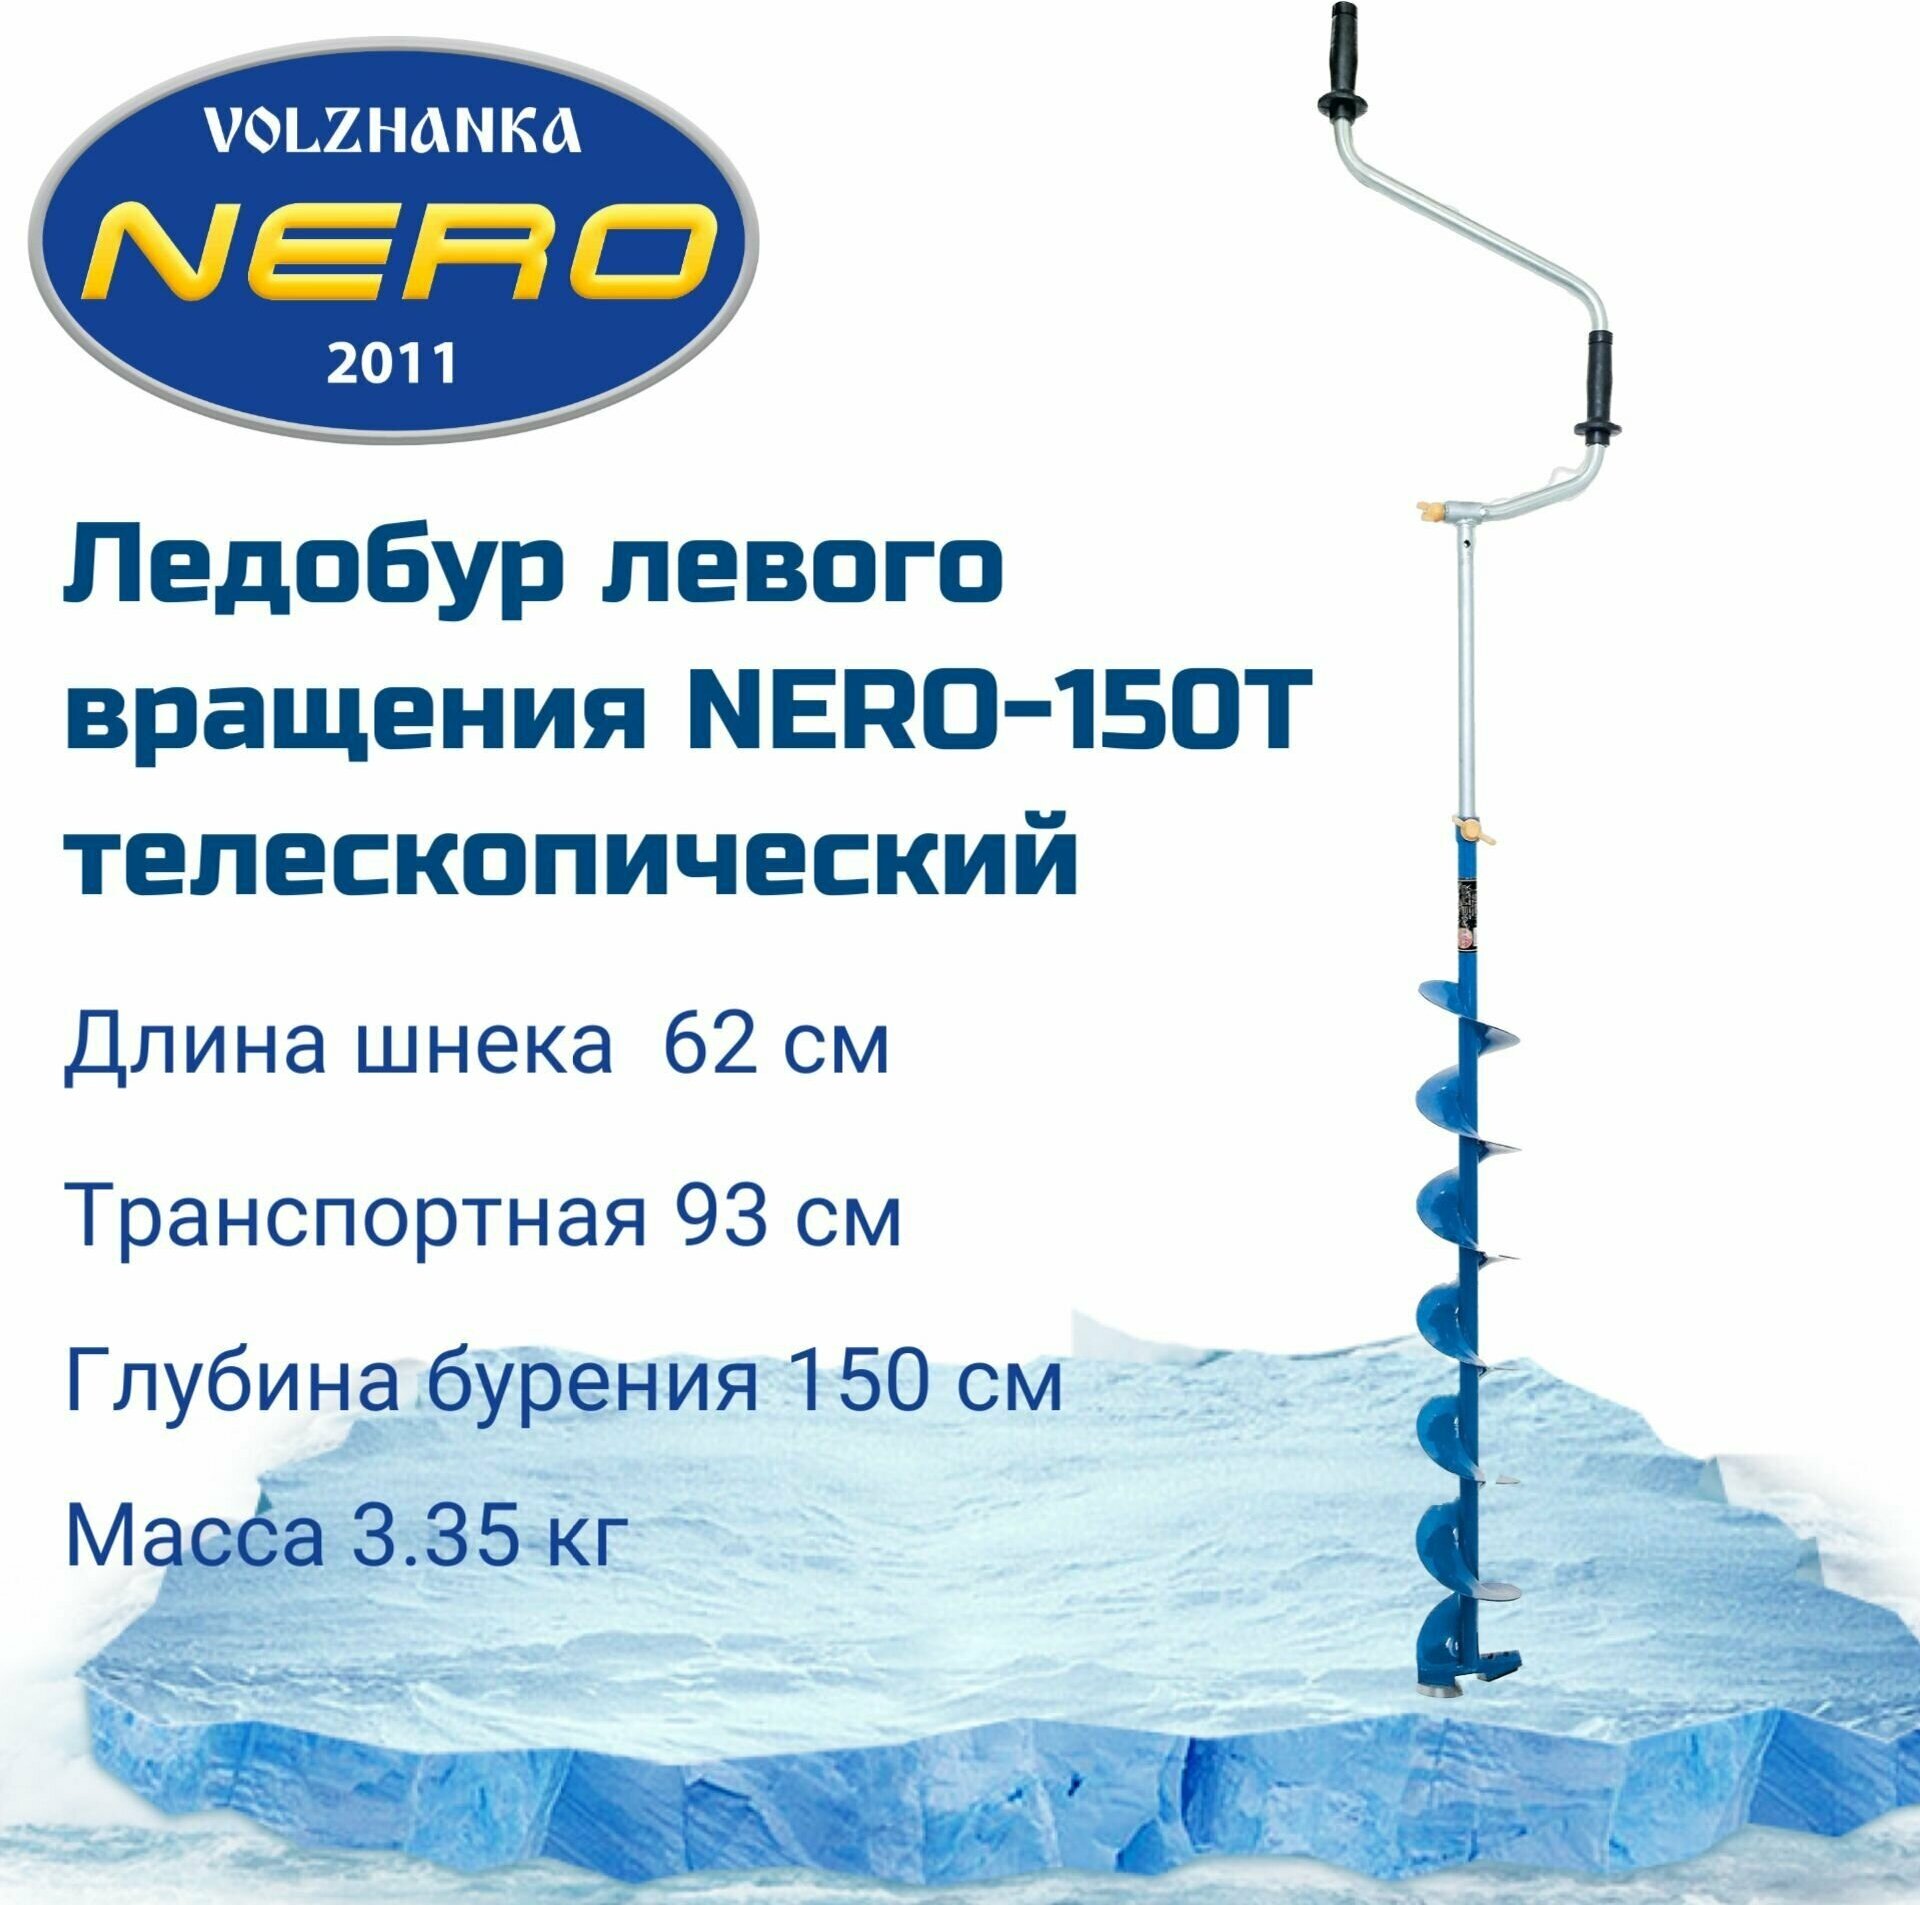 Ледобур левого вращения "NERO-150T телескопический"